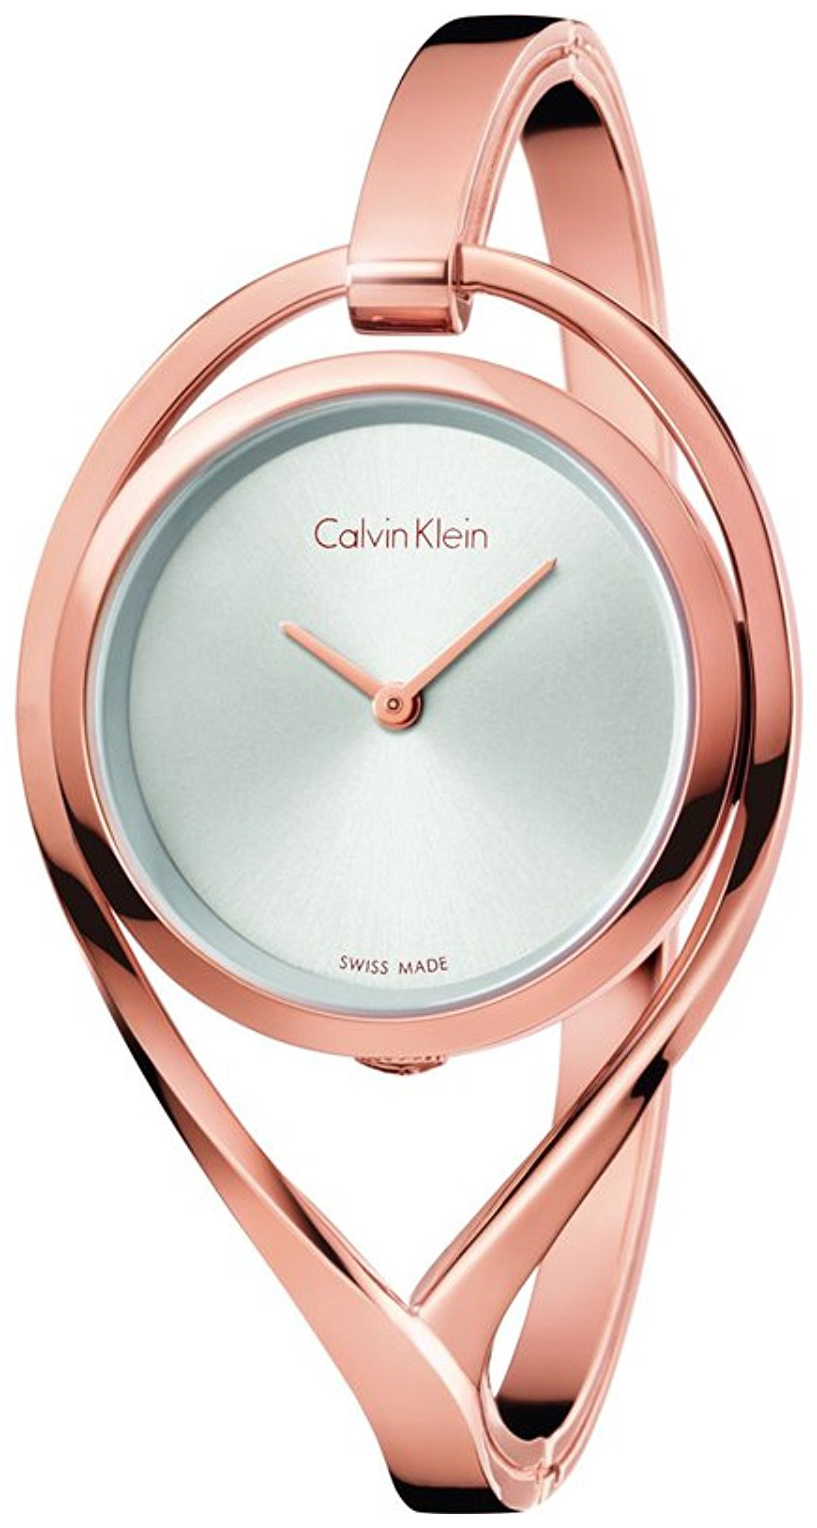 Calvin Klein 99999 Damklocka K6L2S616 Silverfärgad/Roséguldstonat stål